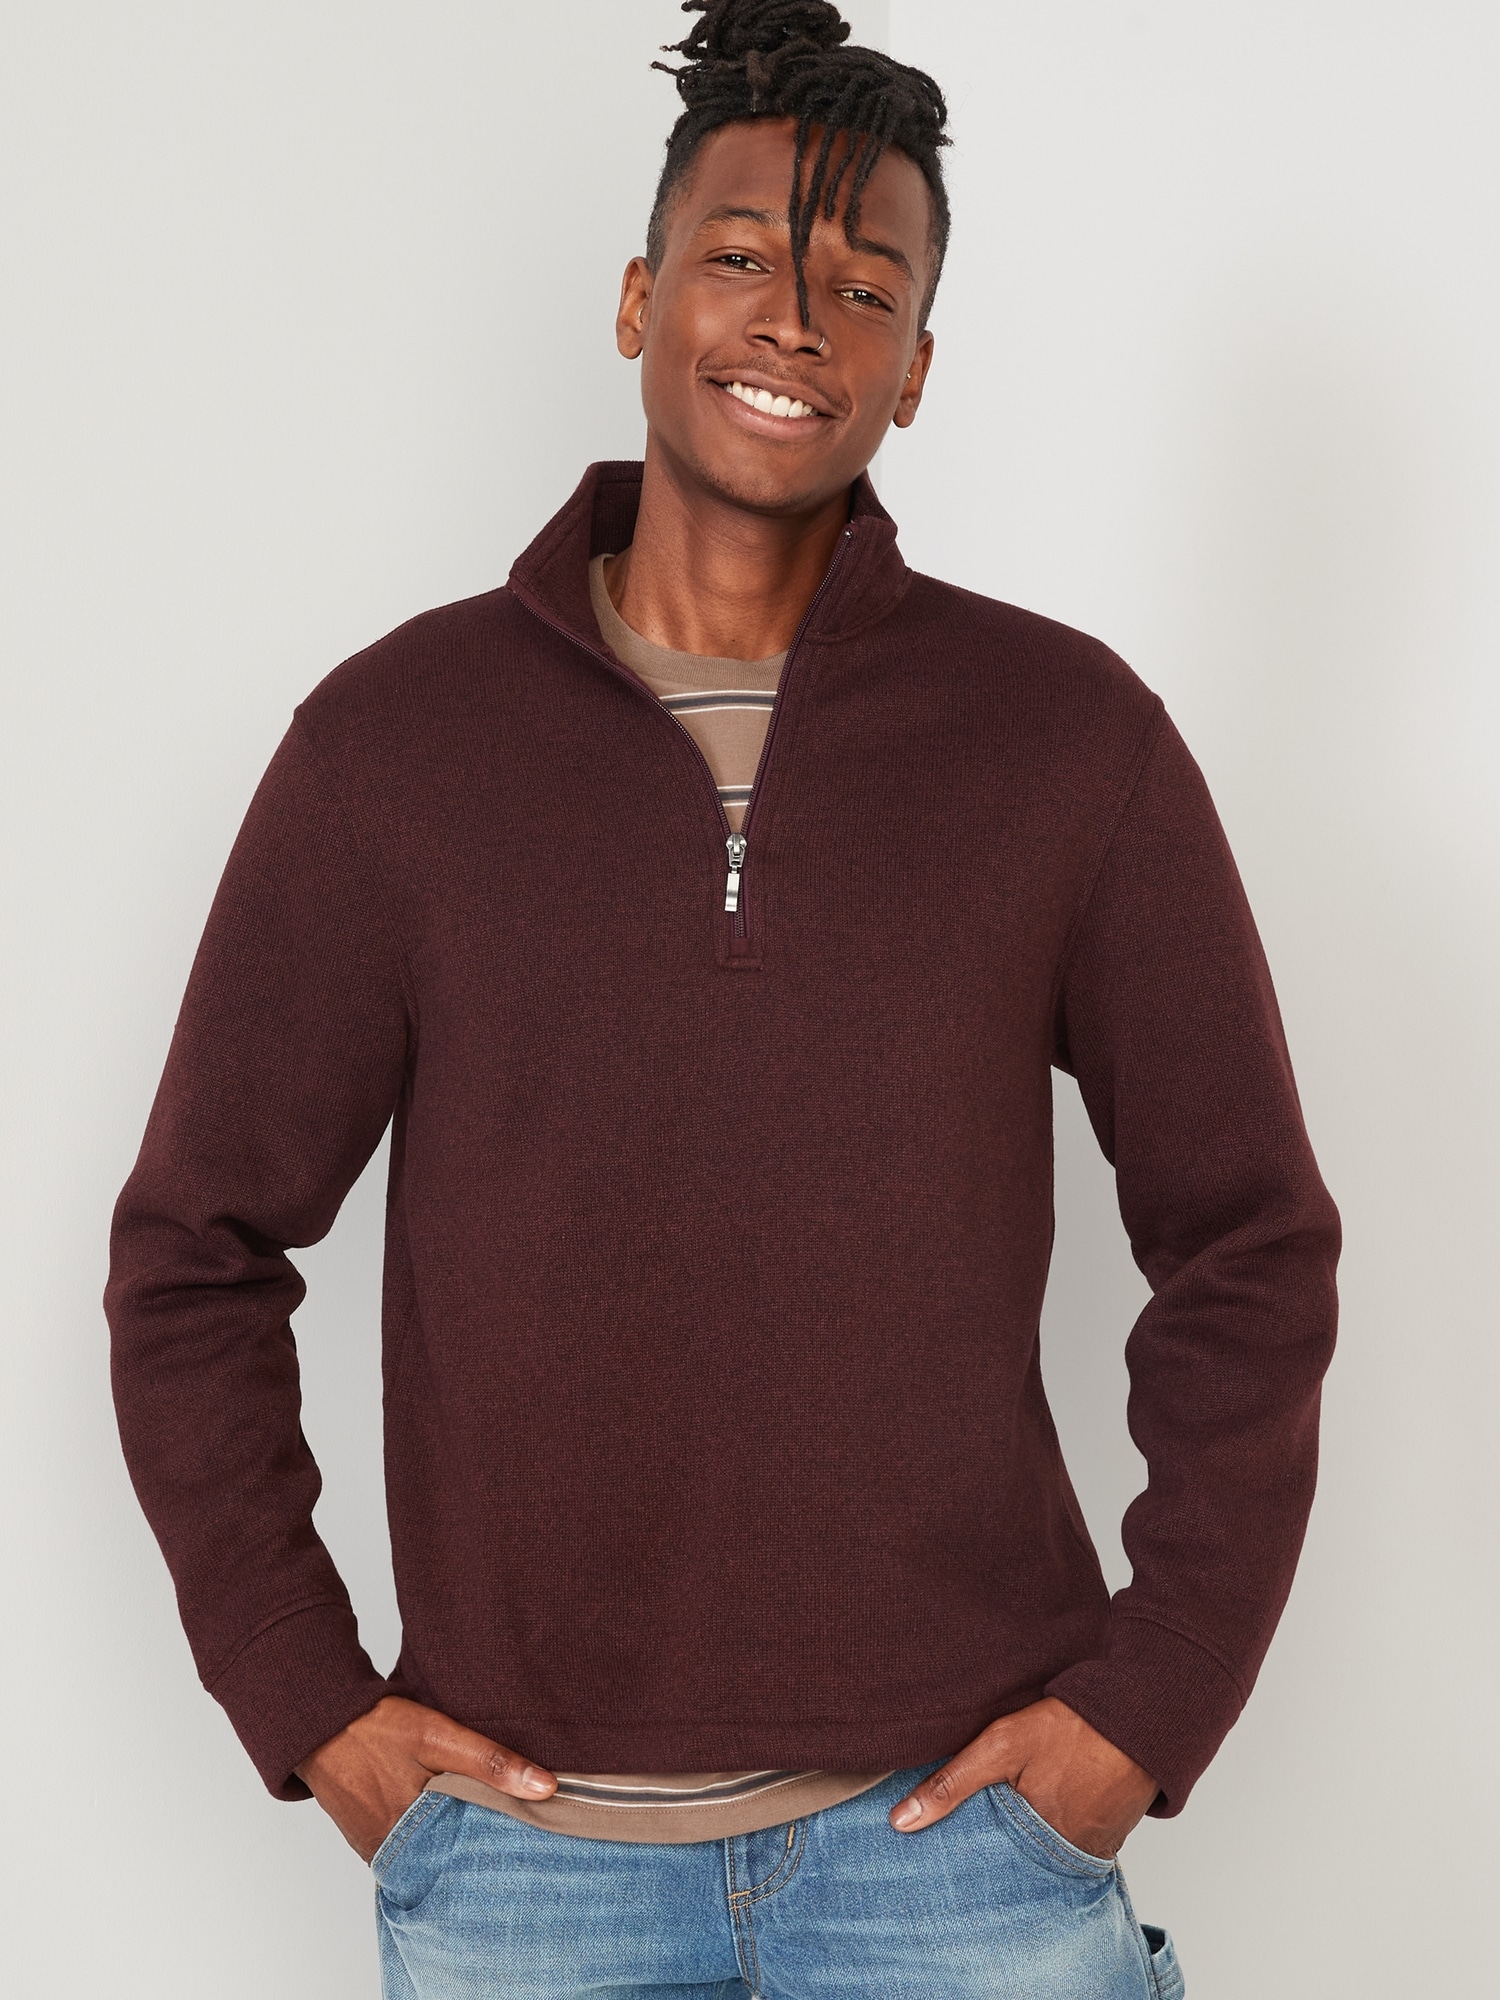 Sweater-Fleece Mock-Neck Quarter-Zip Sweatshirt for Men | Old Navy